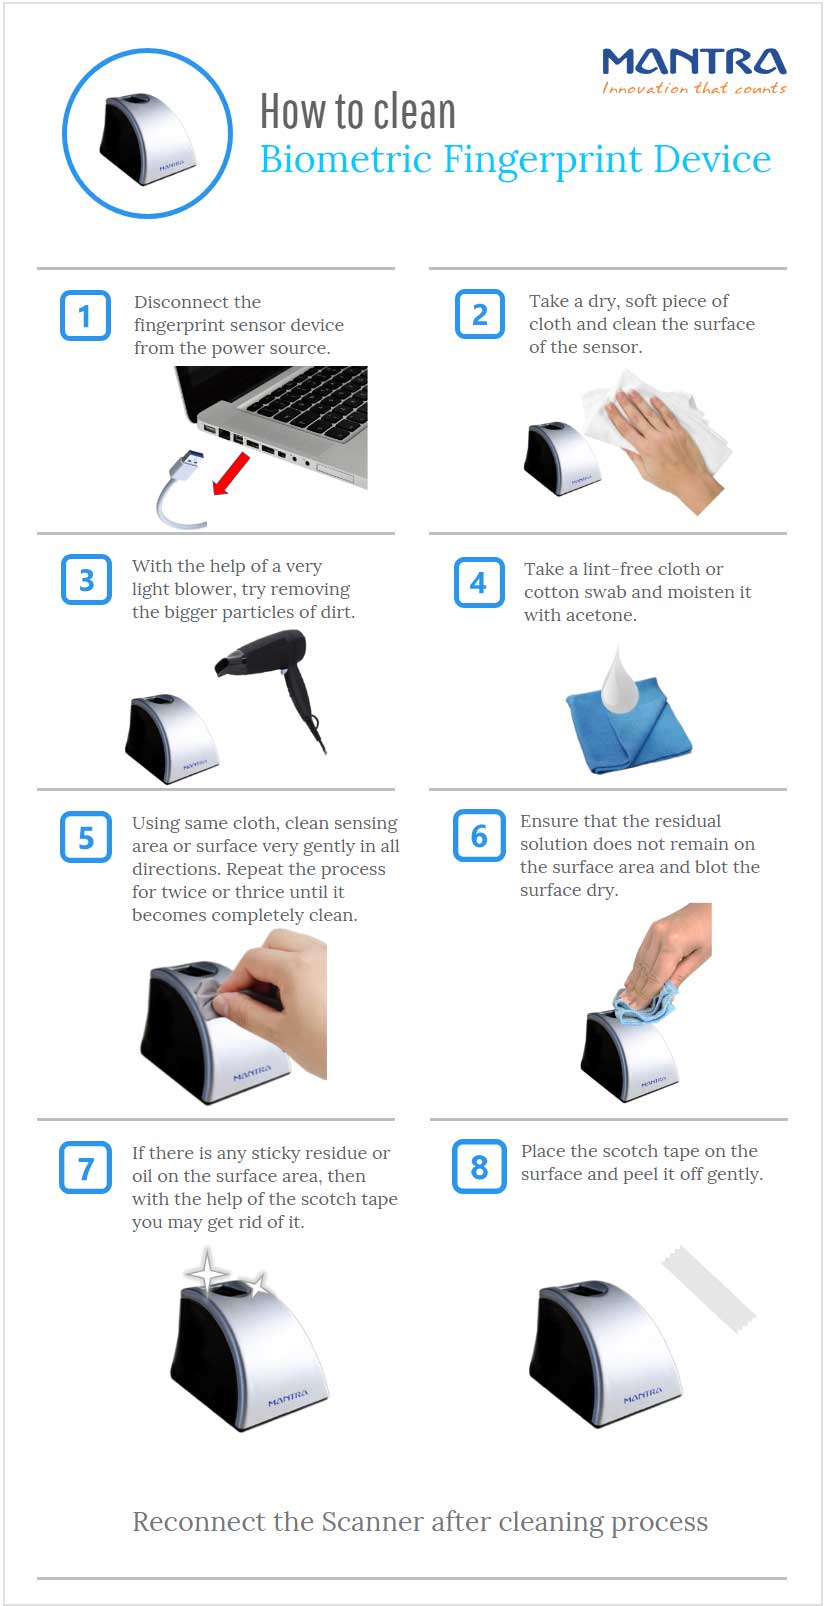 Steps for cleansing the fingerprint sensor device